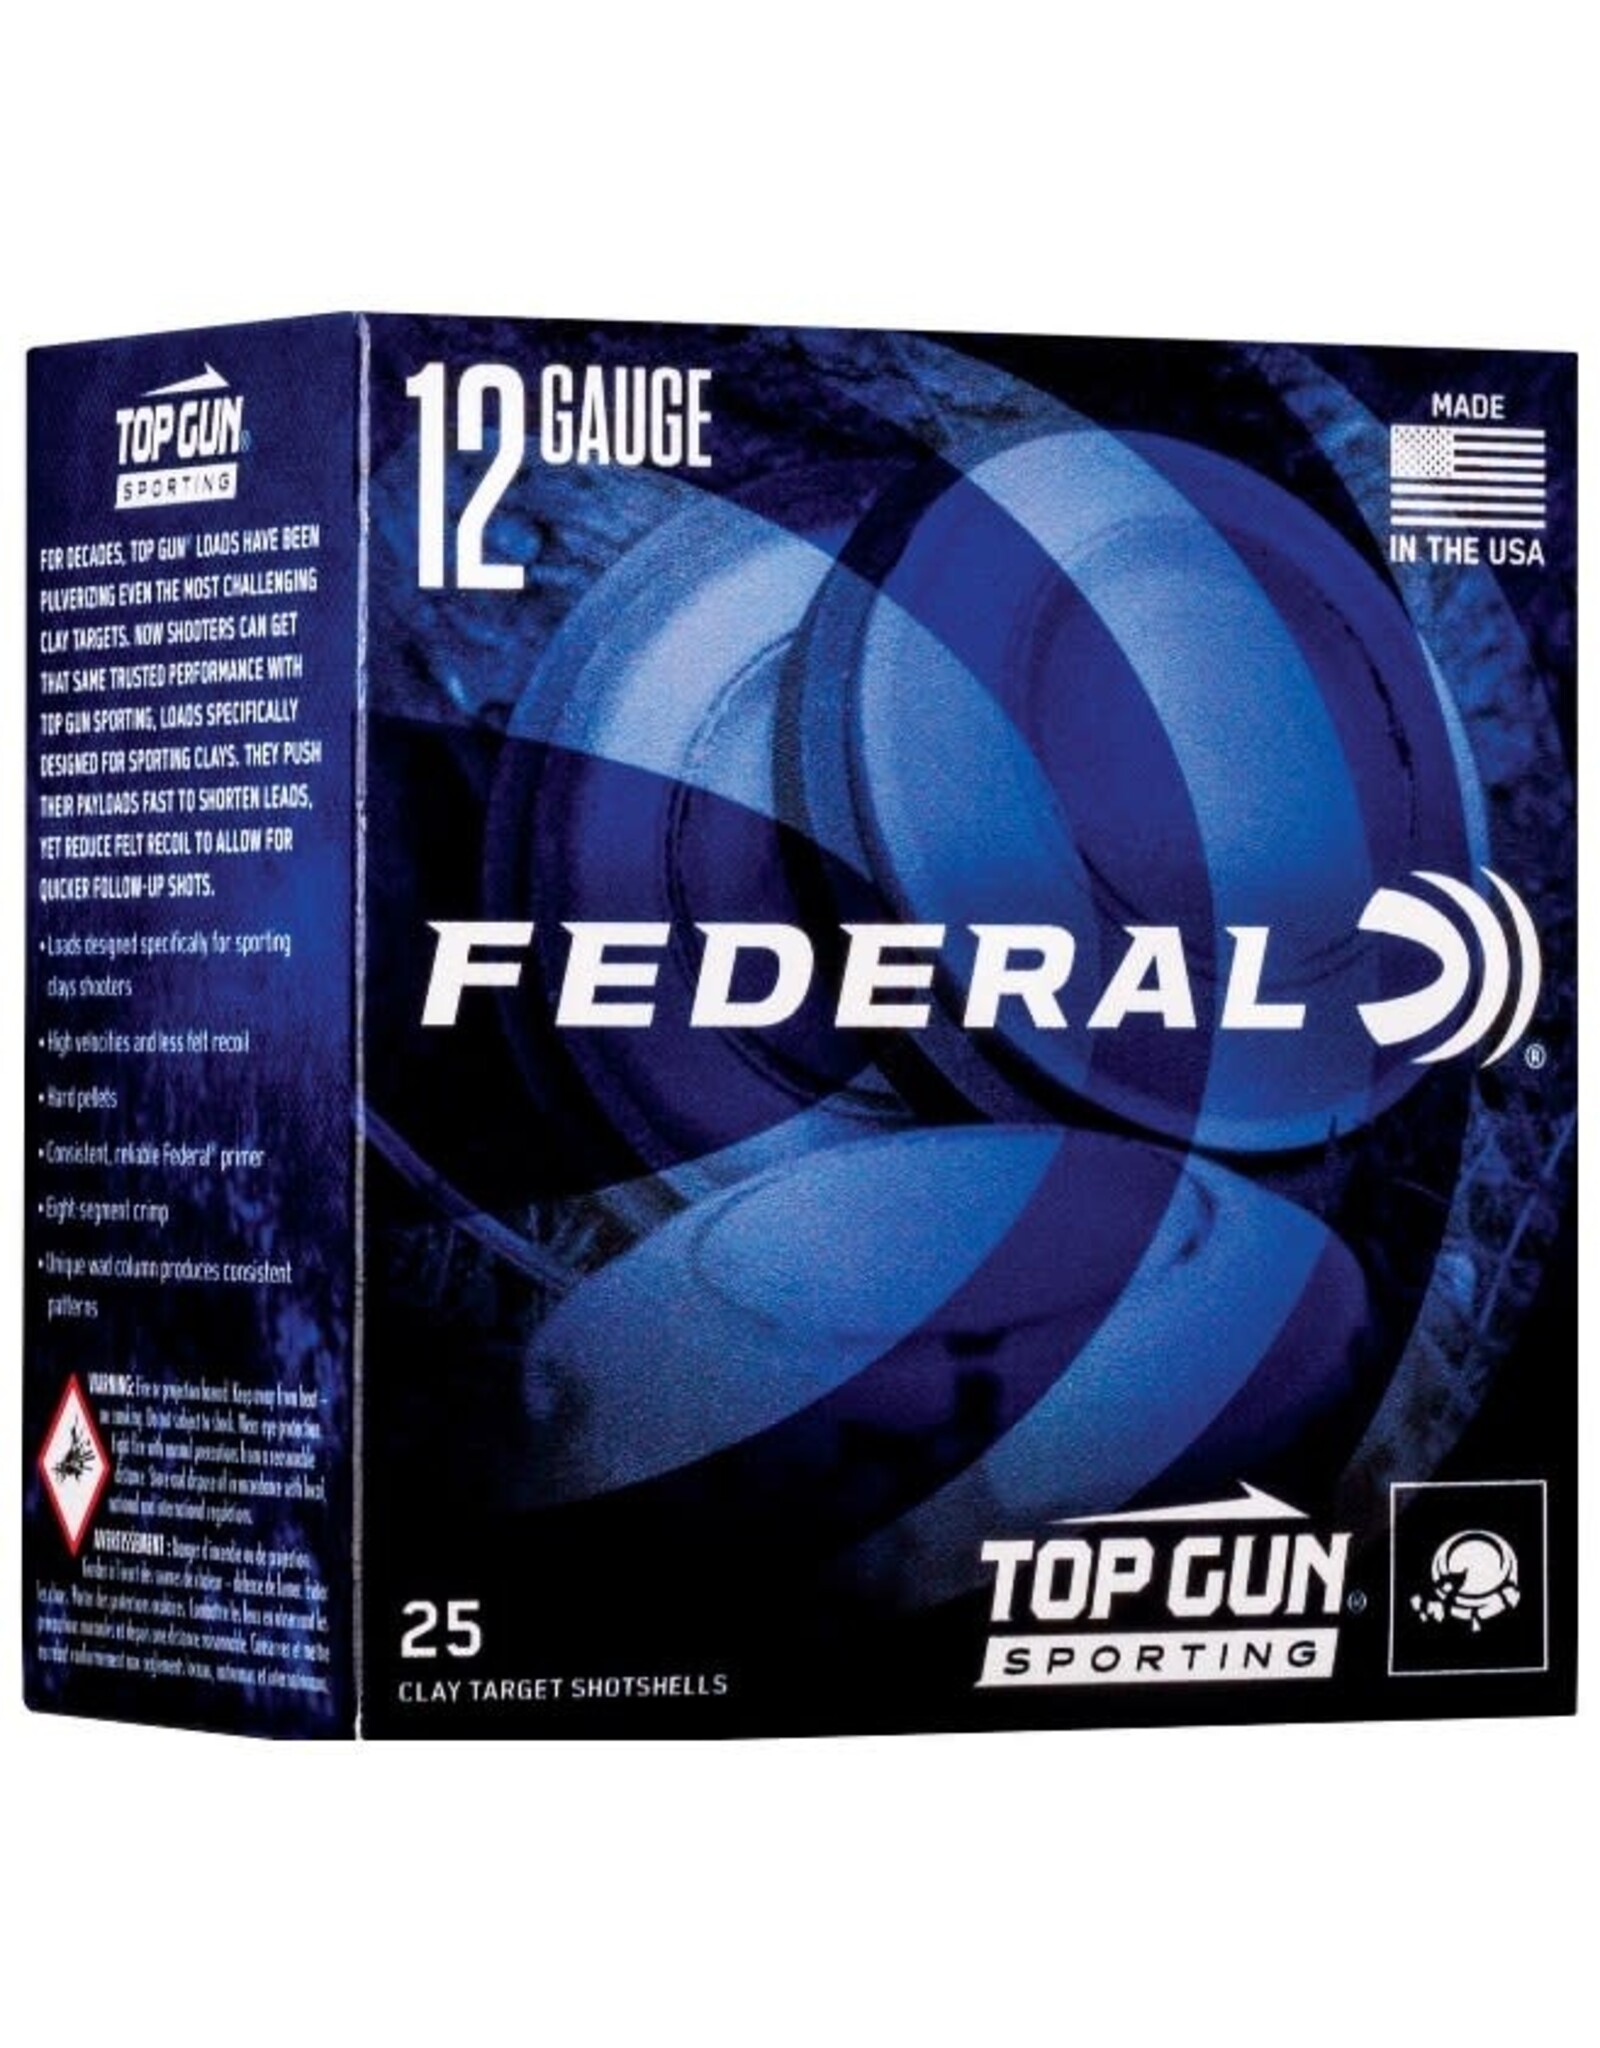 Federal Top Gun 12 Ga 2.75" 1 Oz. #7.5 1300 FPS - 25 Count